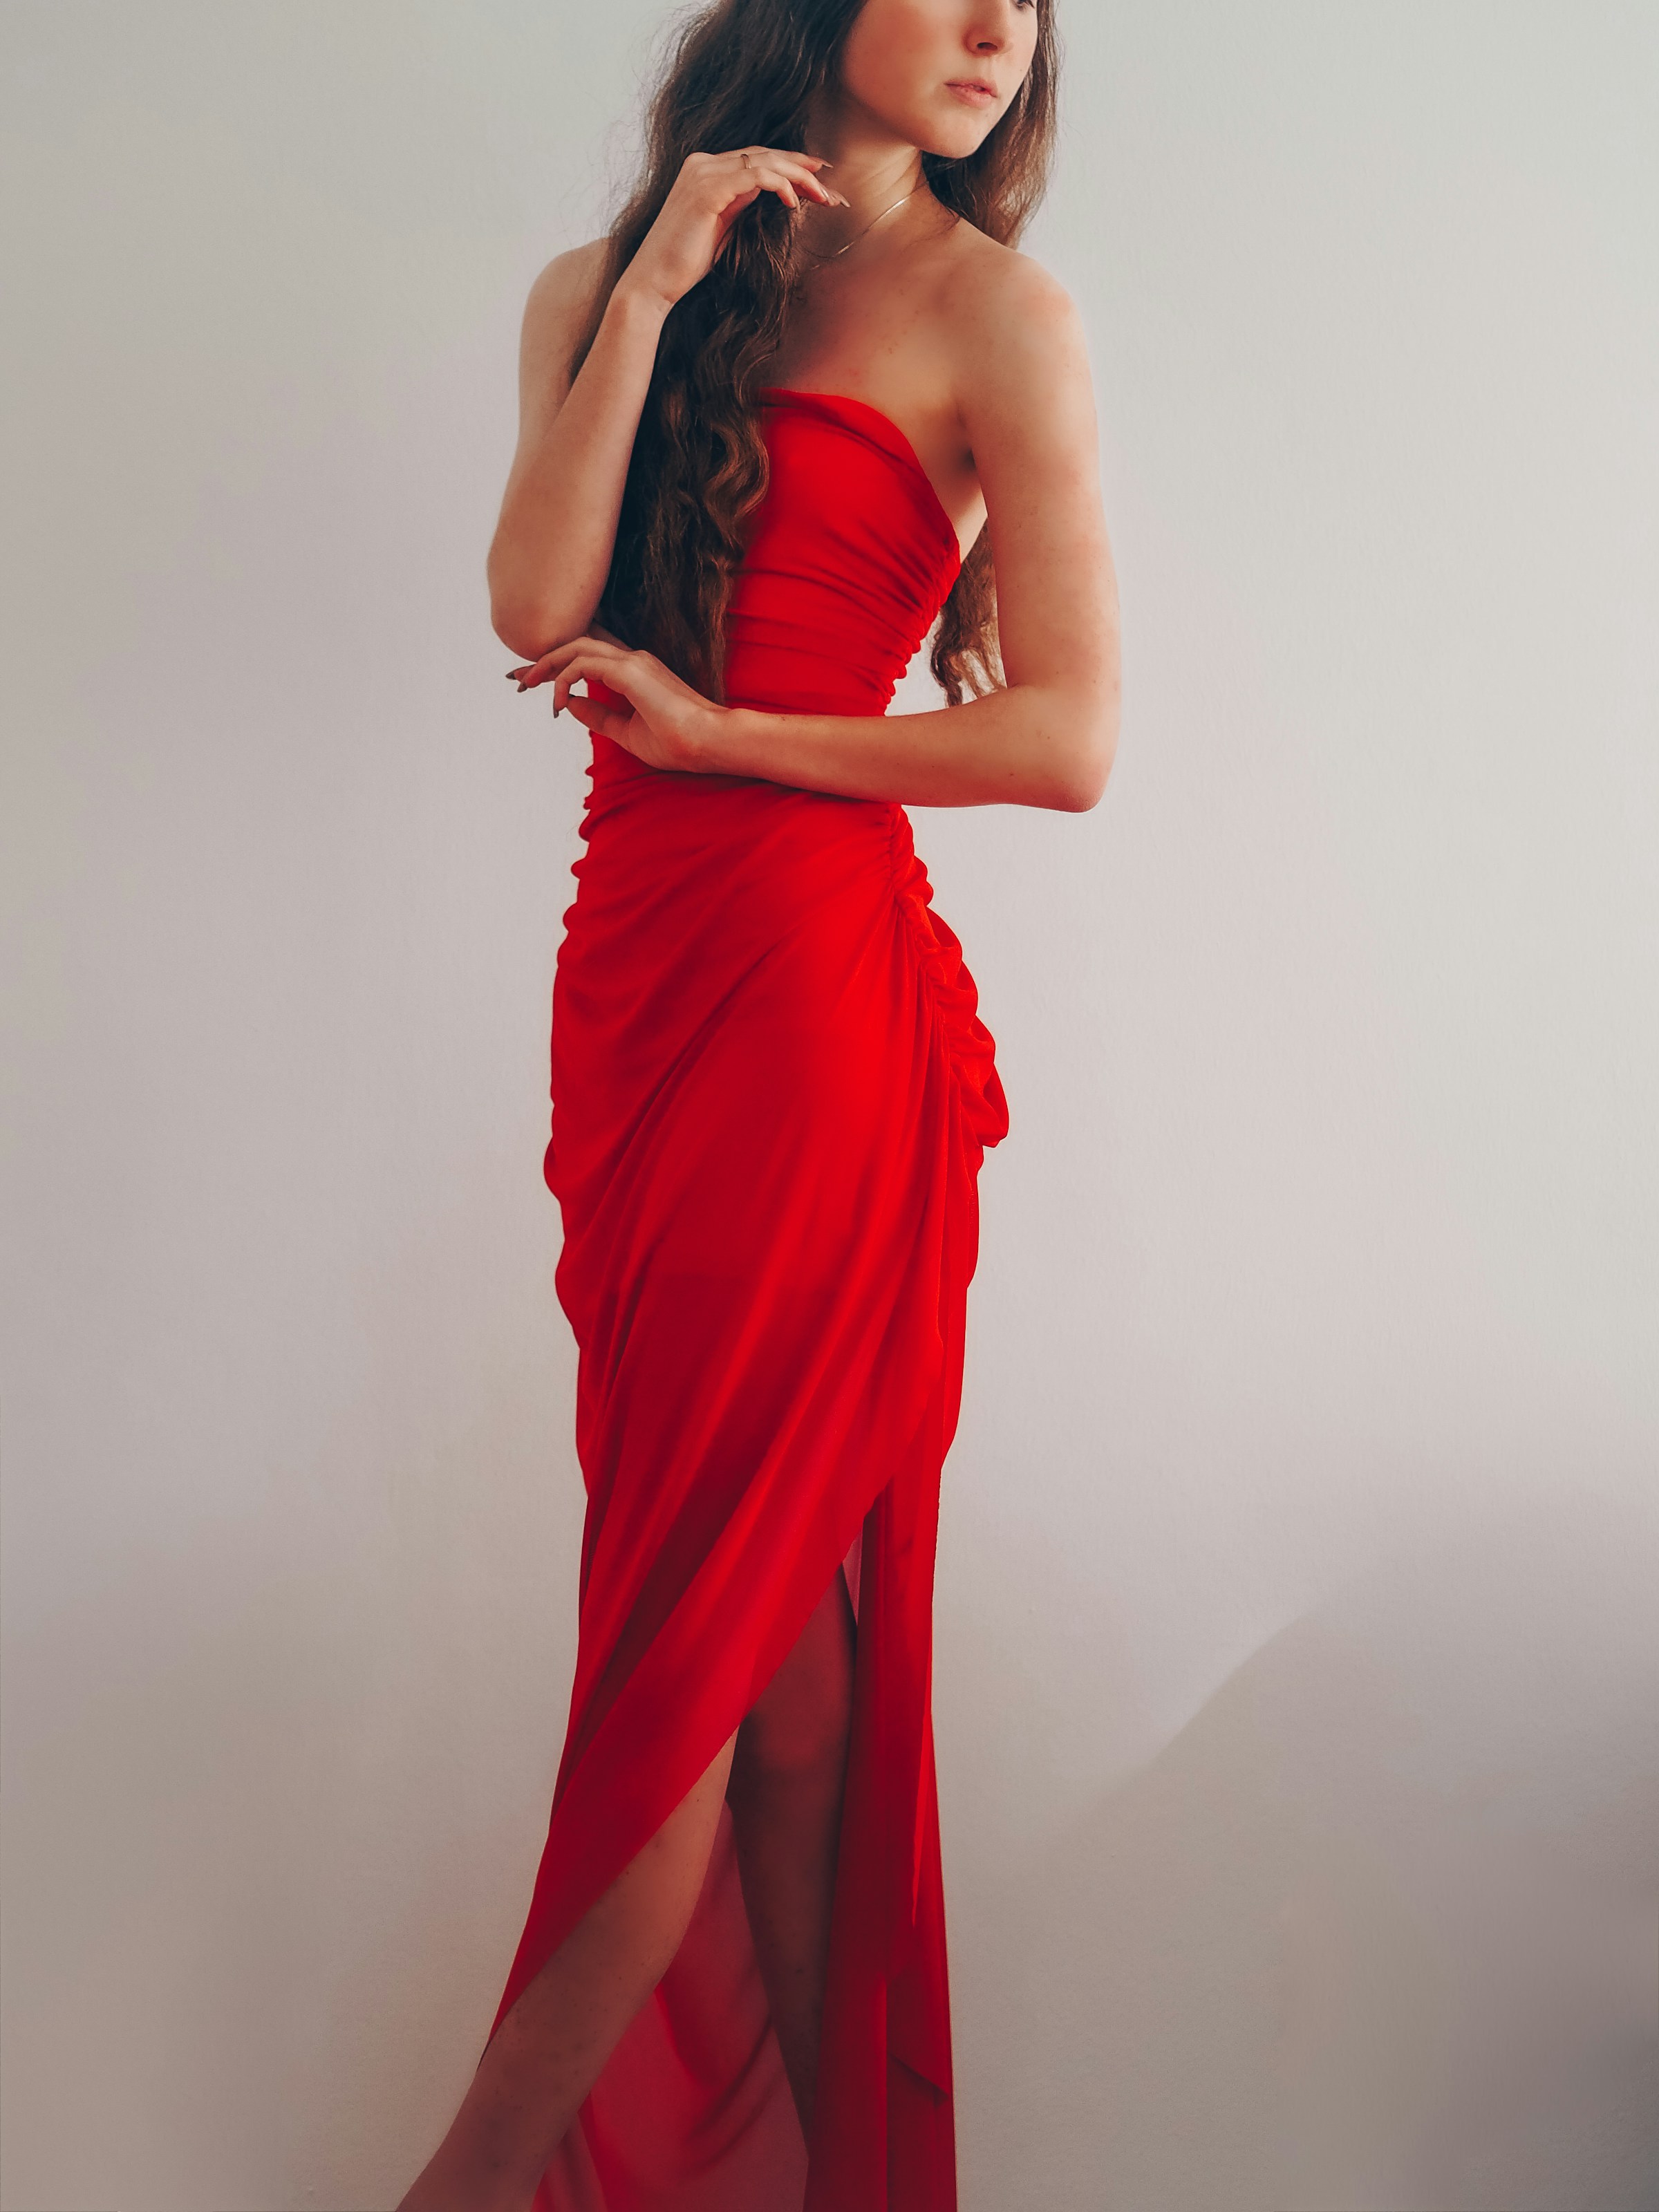 Una chica con un vestido rojo | Foto: Unsplash